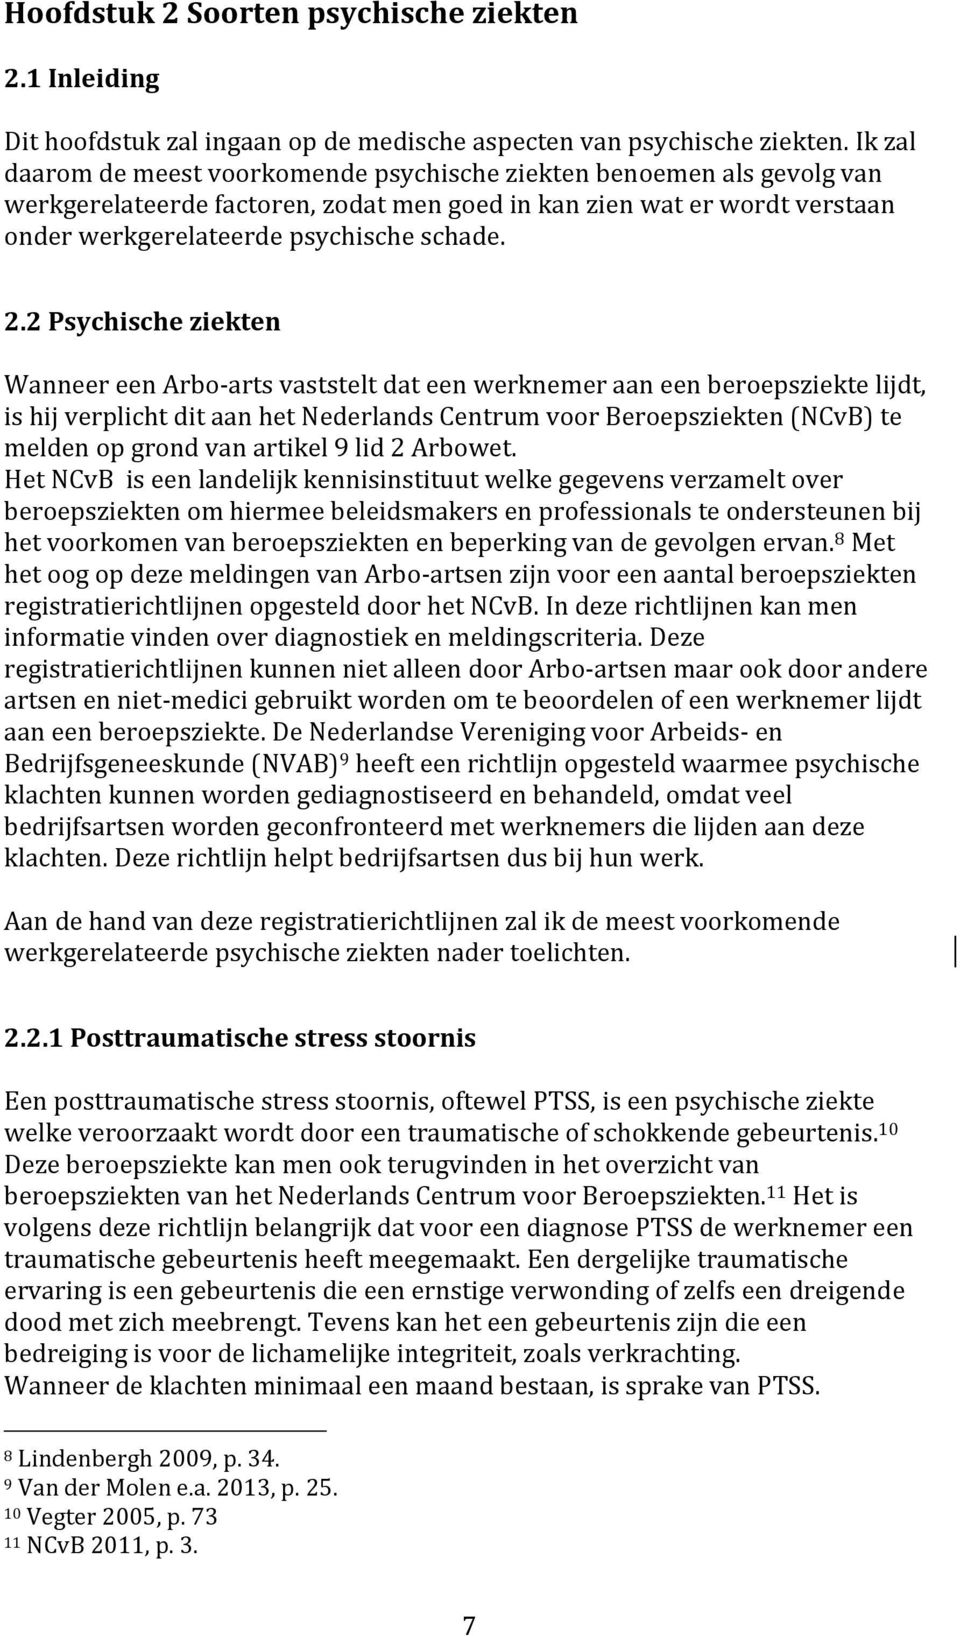 2 Psychische ziekten Wanneer een Arbo-arts vaststelt dat een werknemer aan een beroepsziekte lijdt, is hij verplicht dit aan het Nederlands Centrum voor Beroepsziekten (NCvB) te melden op grond van